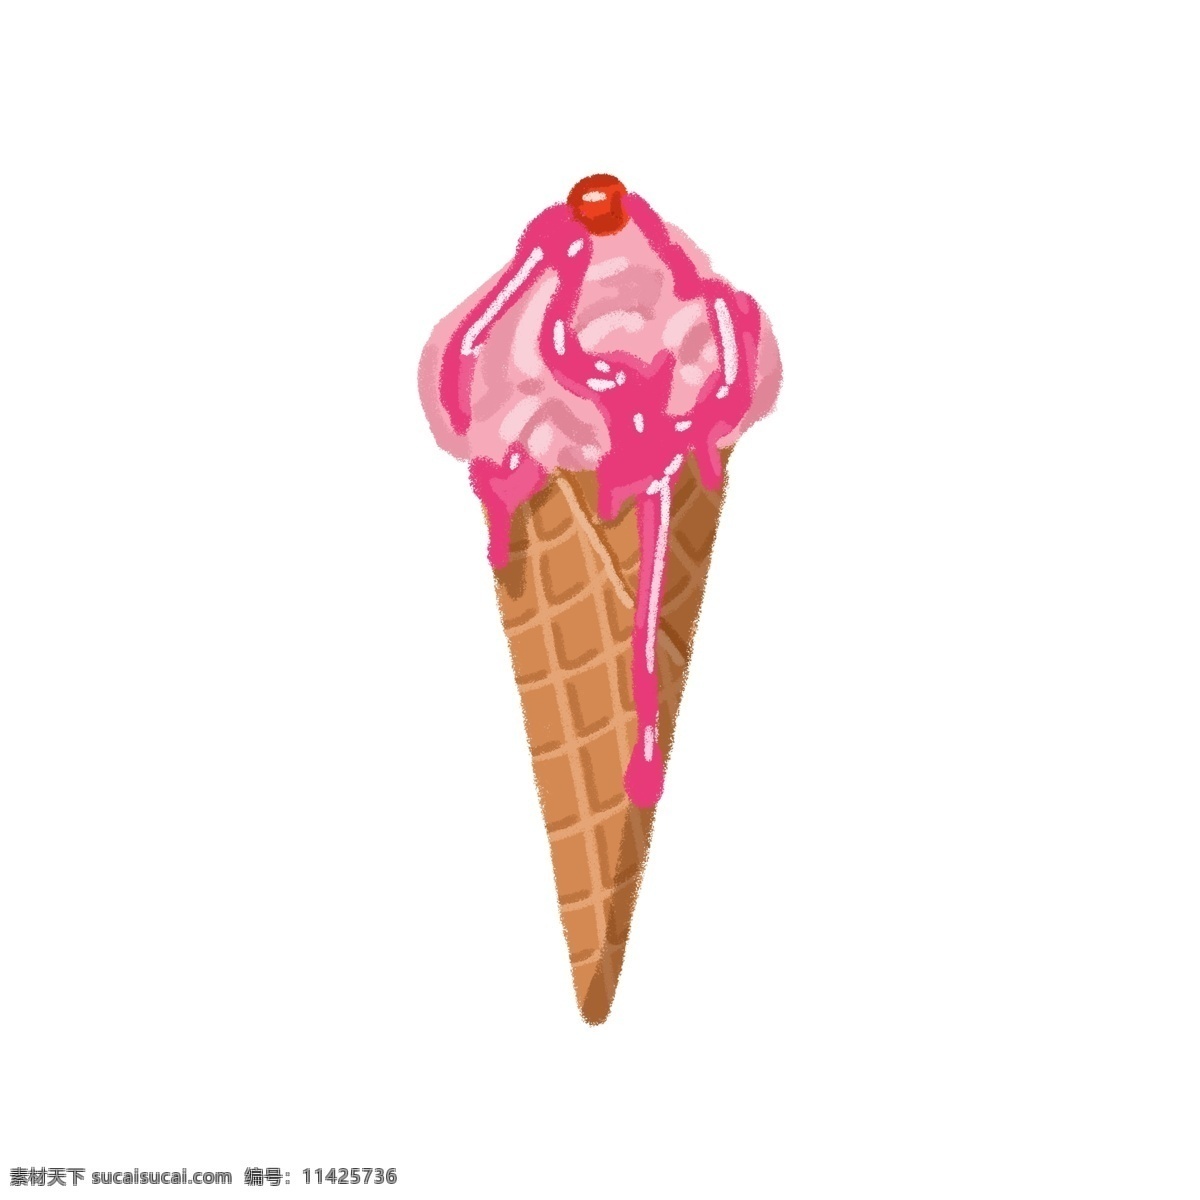 奶油 草莓 酱 冰激凌 甜品 甜点 甜食 奶油冰激凌 草莓冰激凌 草莓酱汁 草莓口味 小红果 蛋筒 美味 冰冷